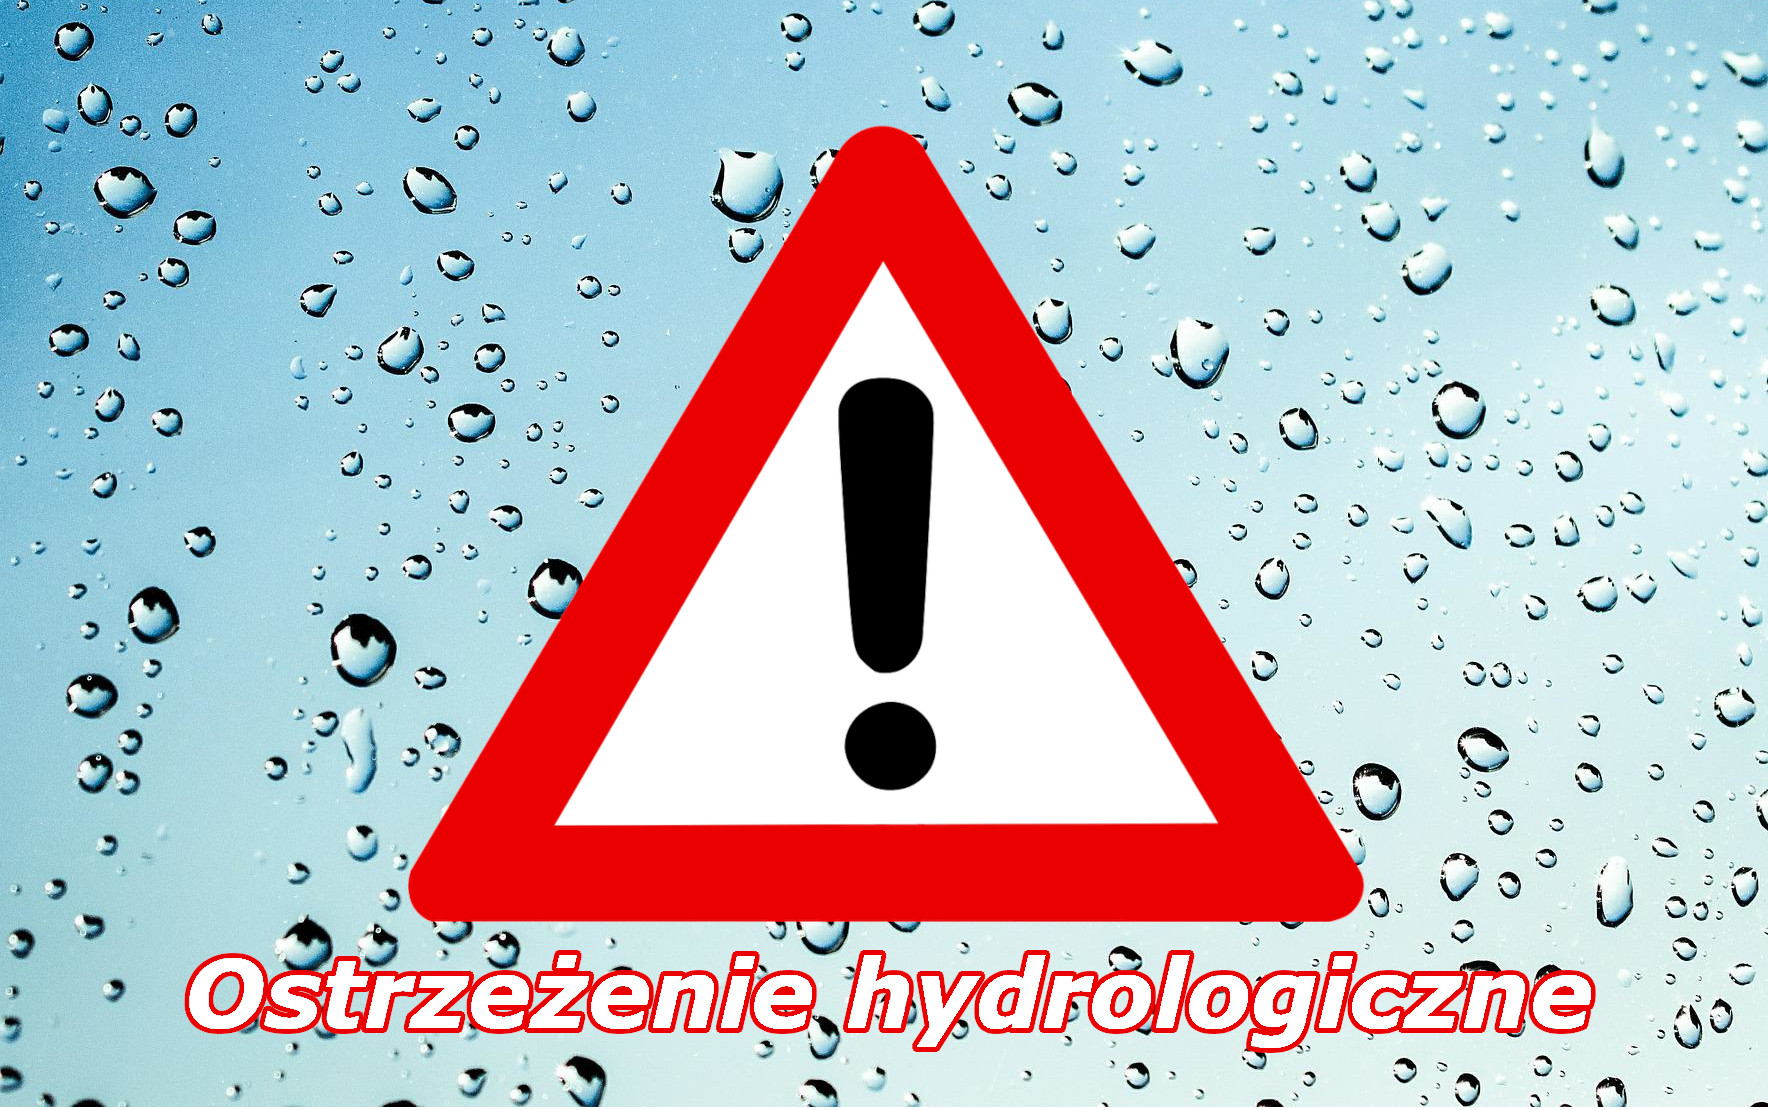 Ostrzeżenie hydrologiczne nr 227 - gwałtowny wzrost stanów wody